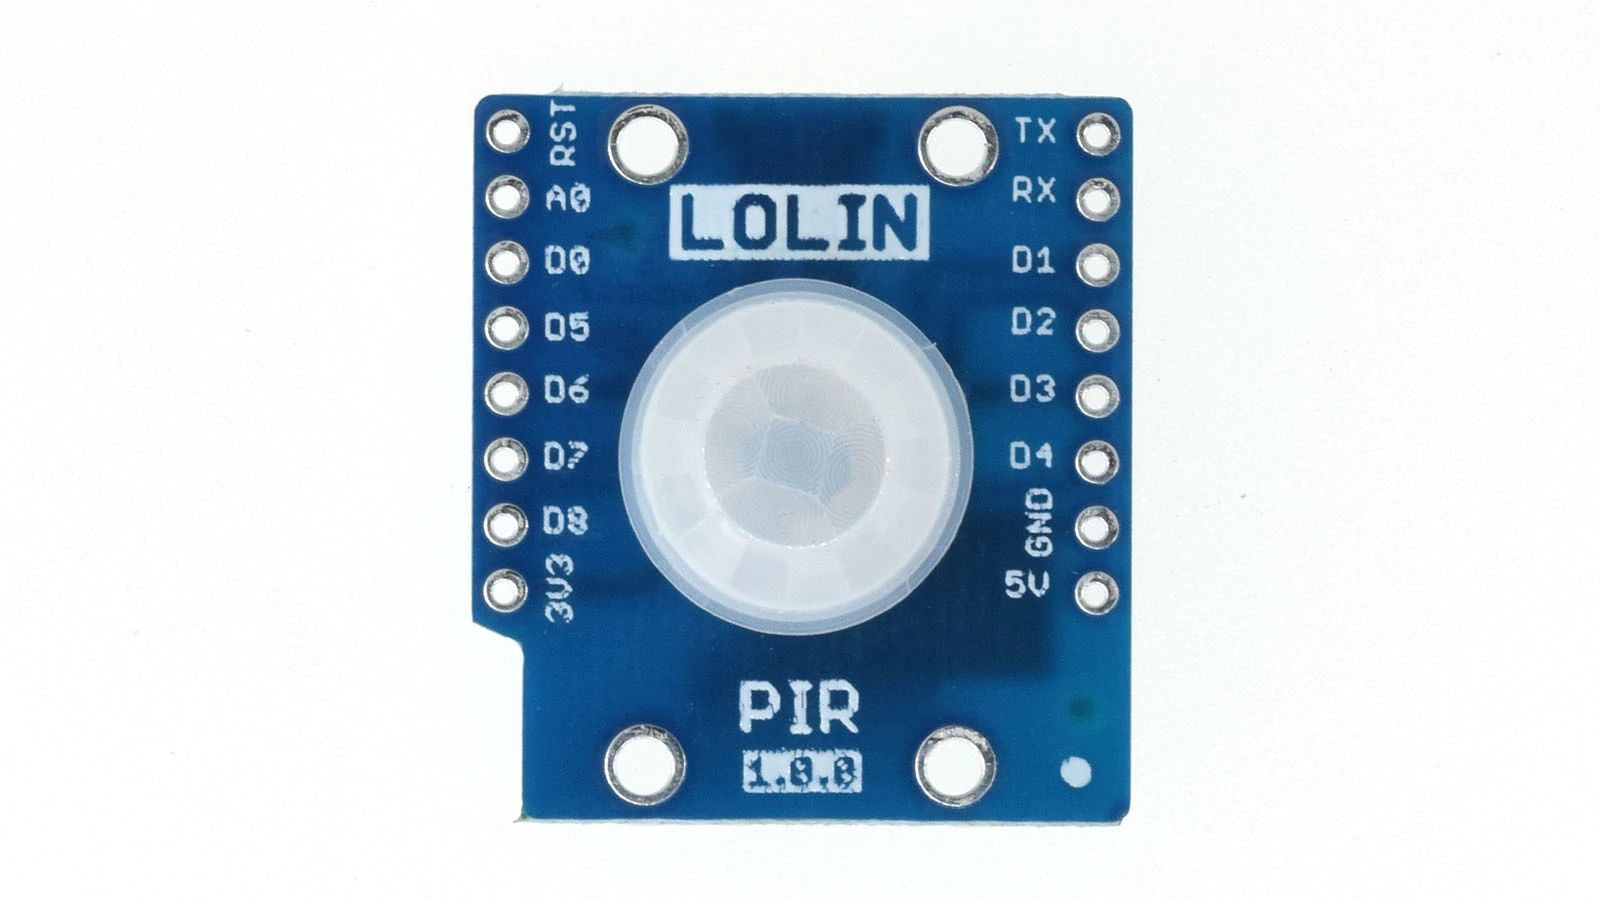 LOLIN D1 PIR Shield v1.0.0